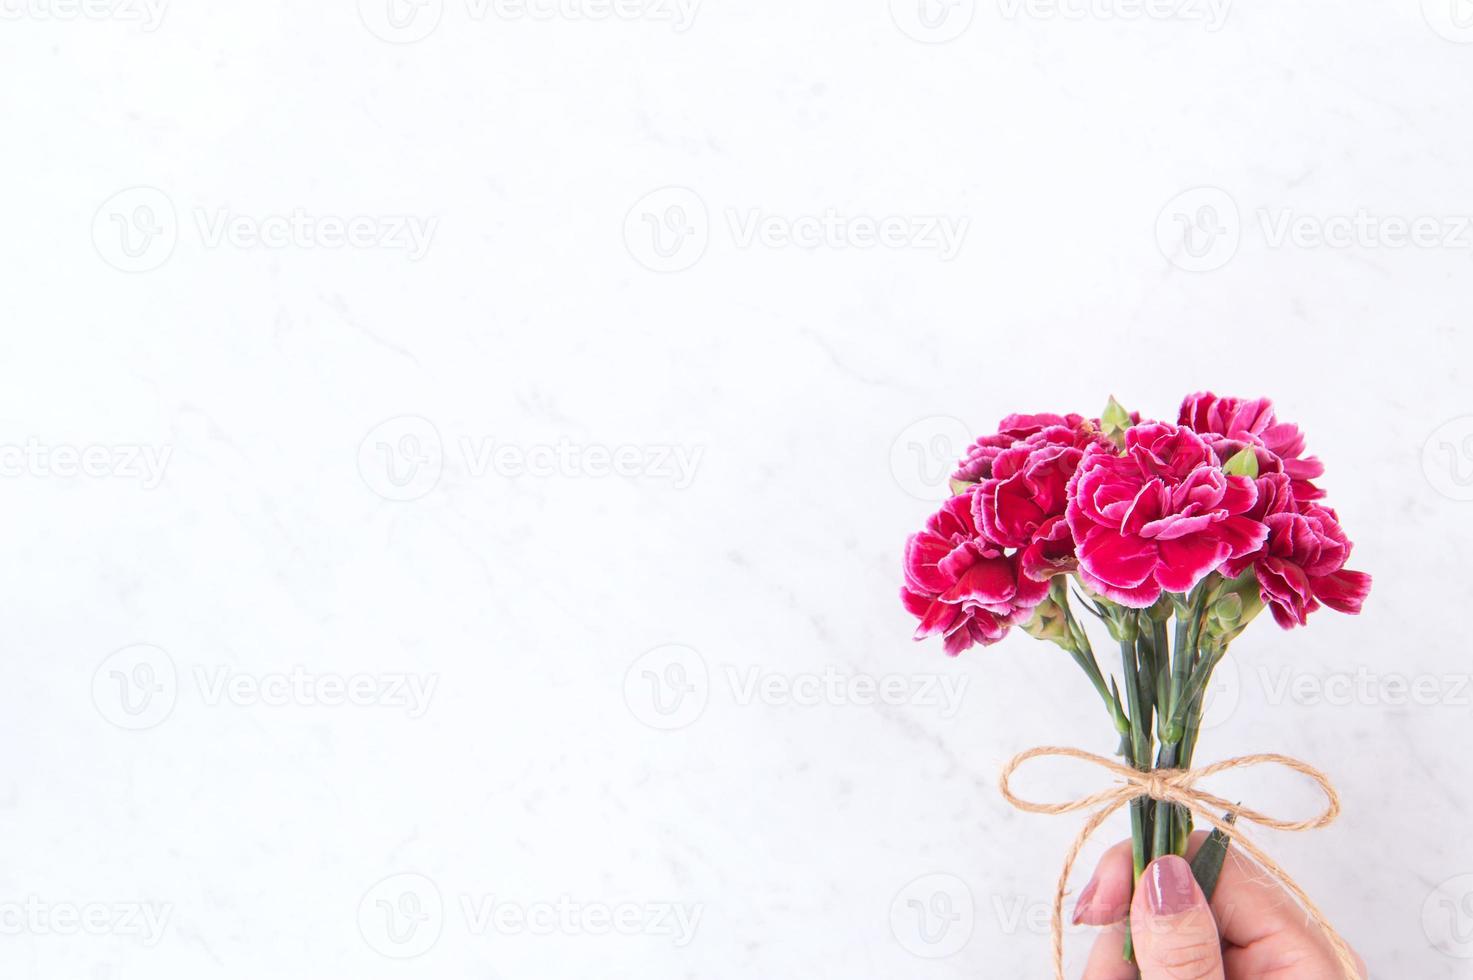 maj mors dag idékonceptfotografering - vackra blommande nejlikor bundna av repbåge som håller i kvinnans hand isolerad på ljust modernt bord, kopieringsutrymme, platt läggning, ovanifrån foto